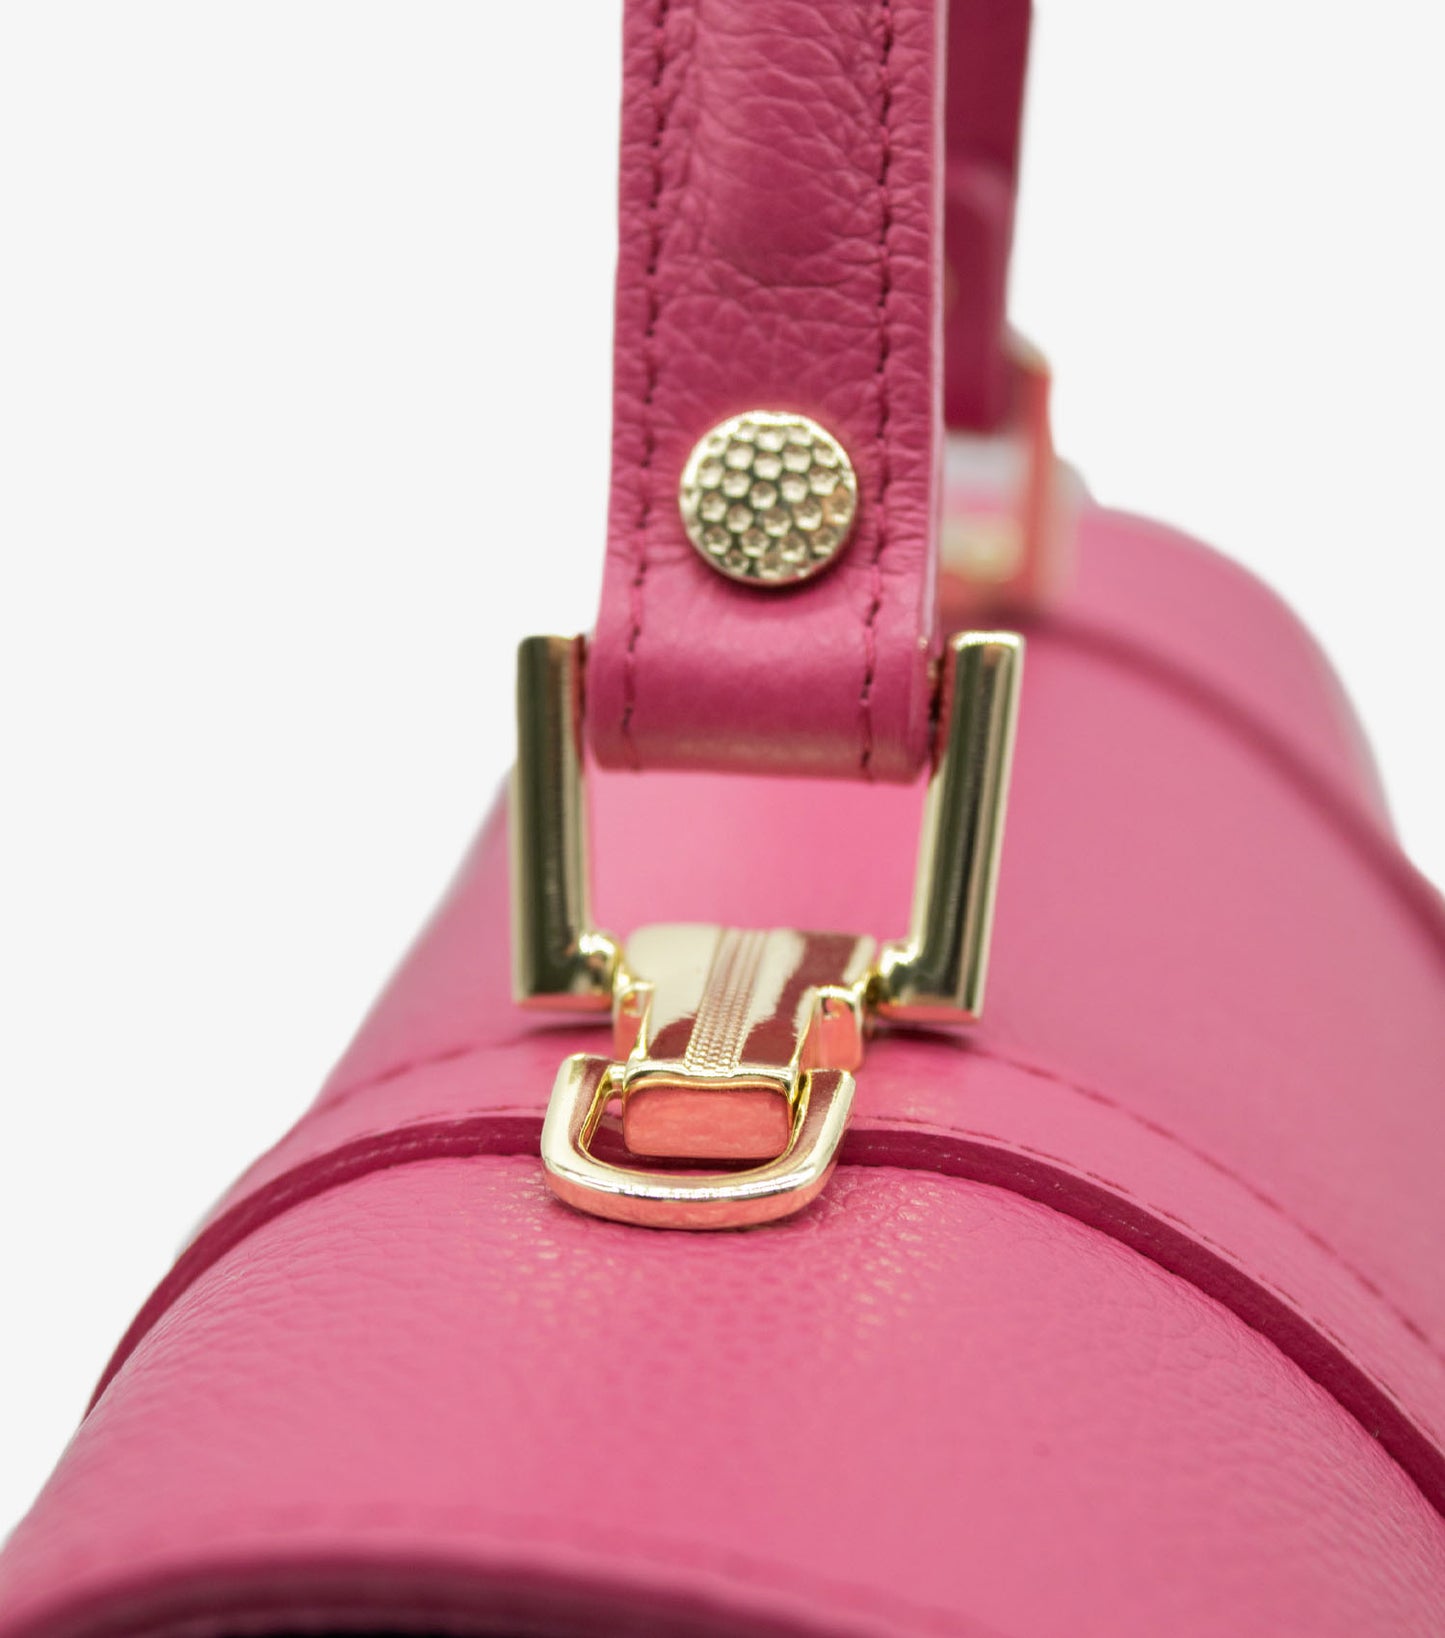 Cavalinho Muse Leather Handbag - HotPink - 18300508.18_P04